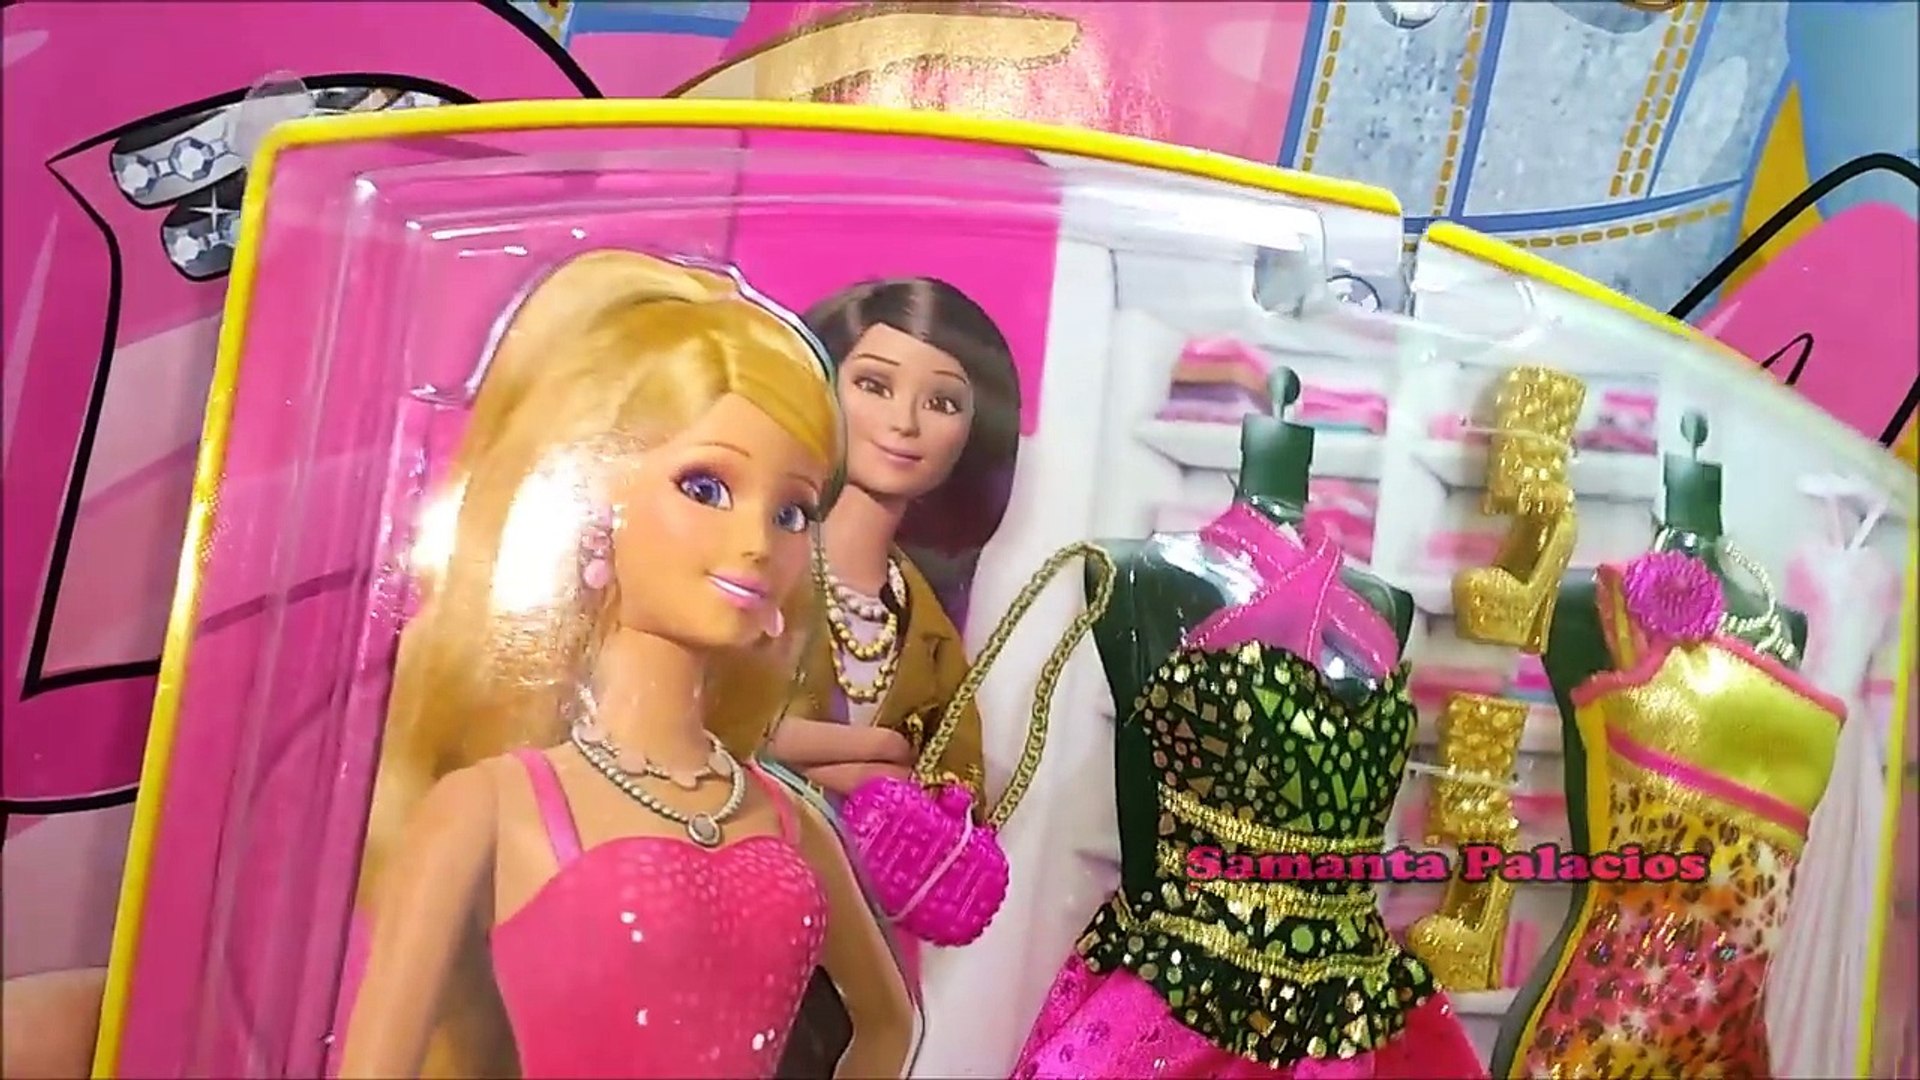 Paquetes De Ropa De Barbie Hotsell, 55% OFF | www.radiojornalfm.com.br